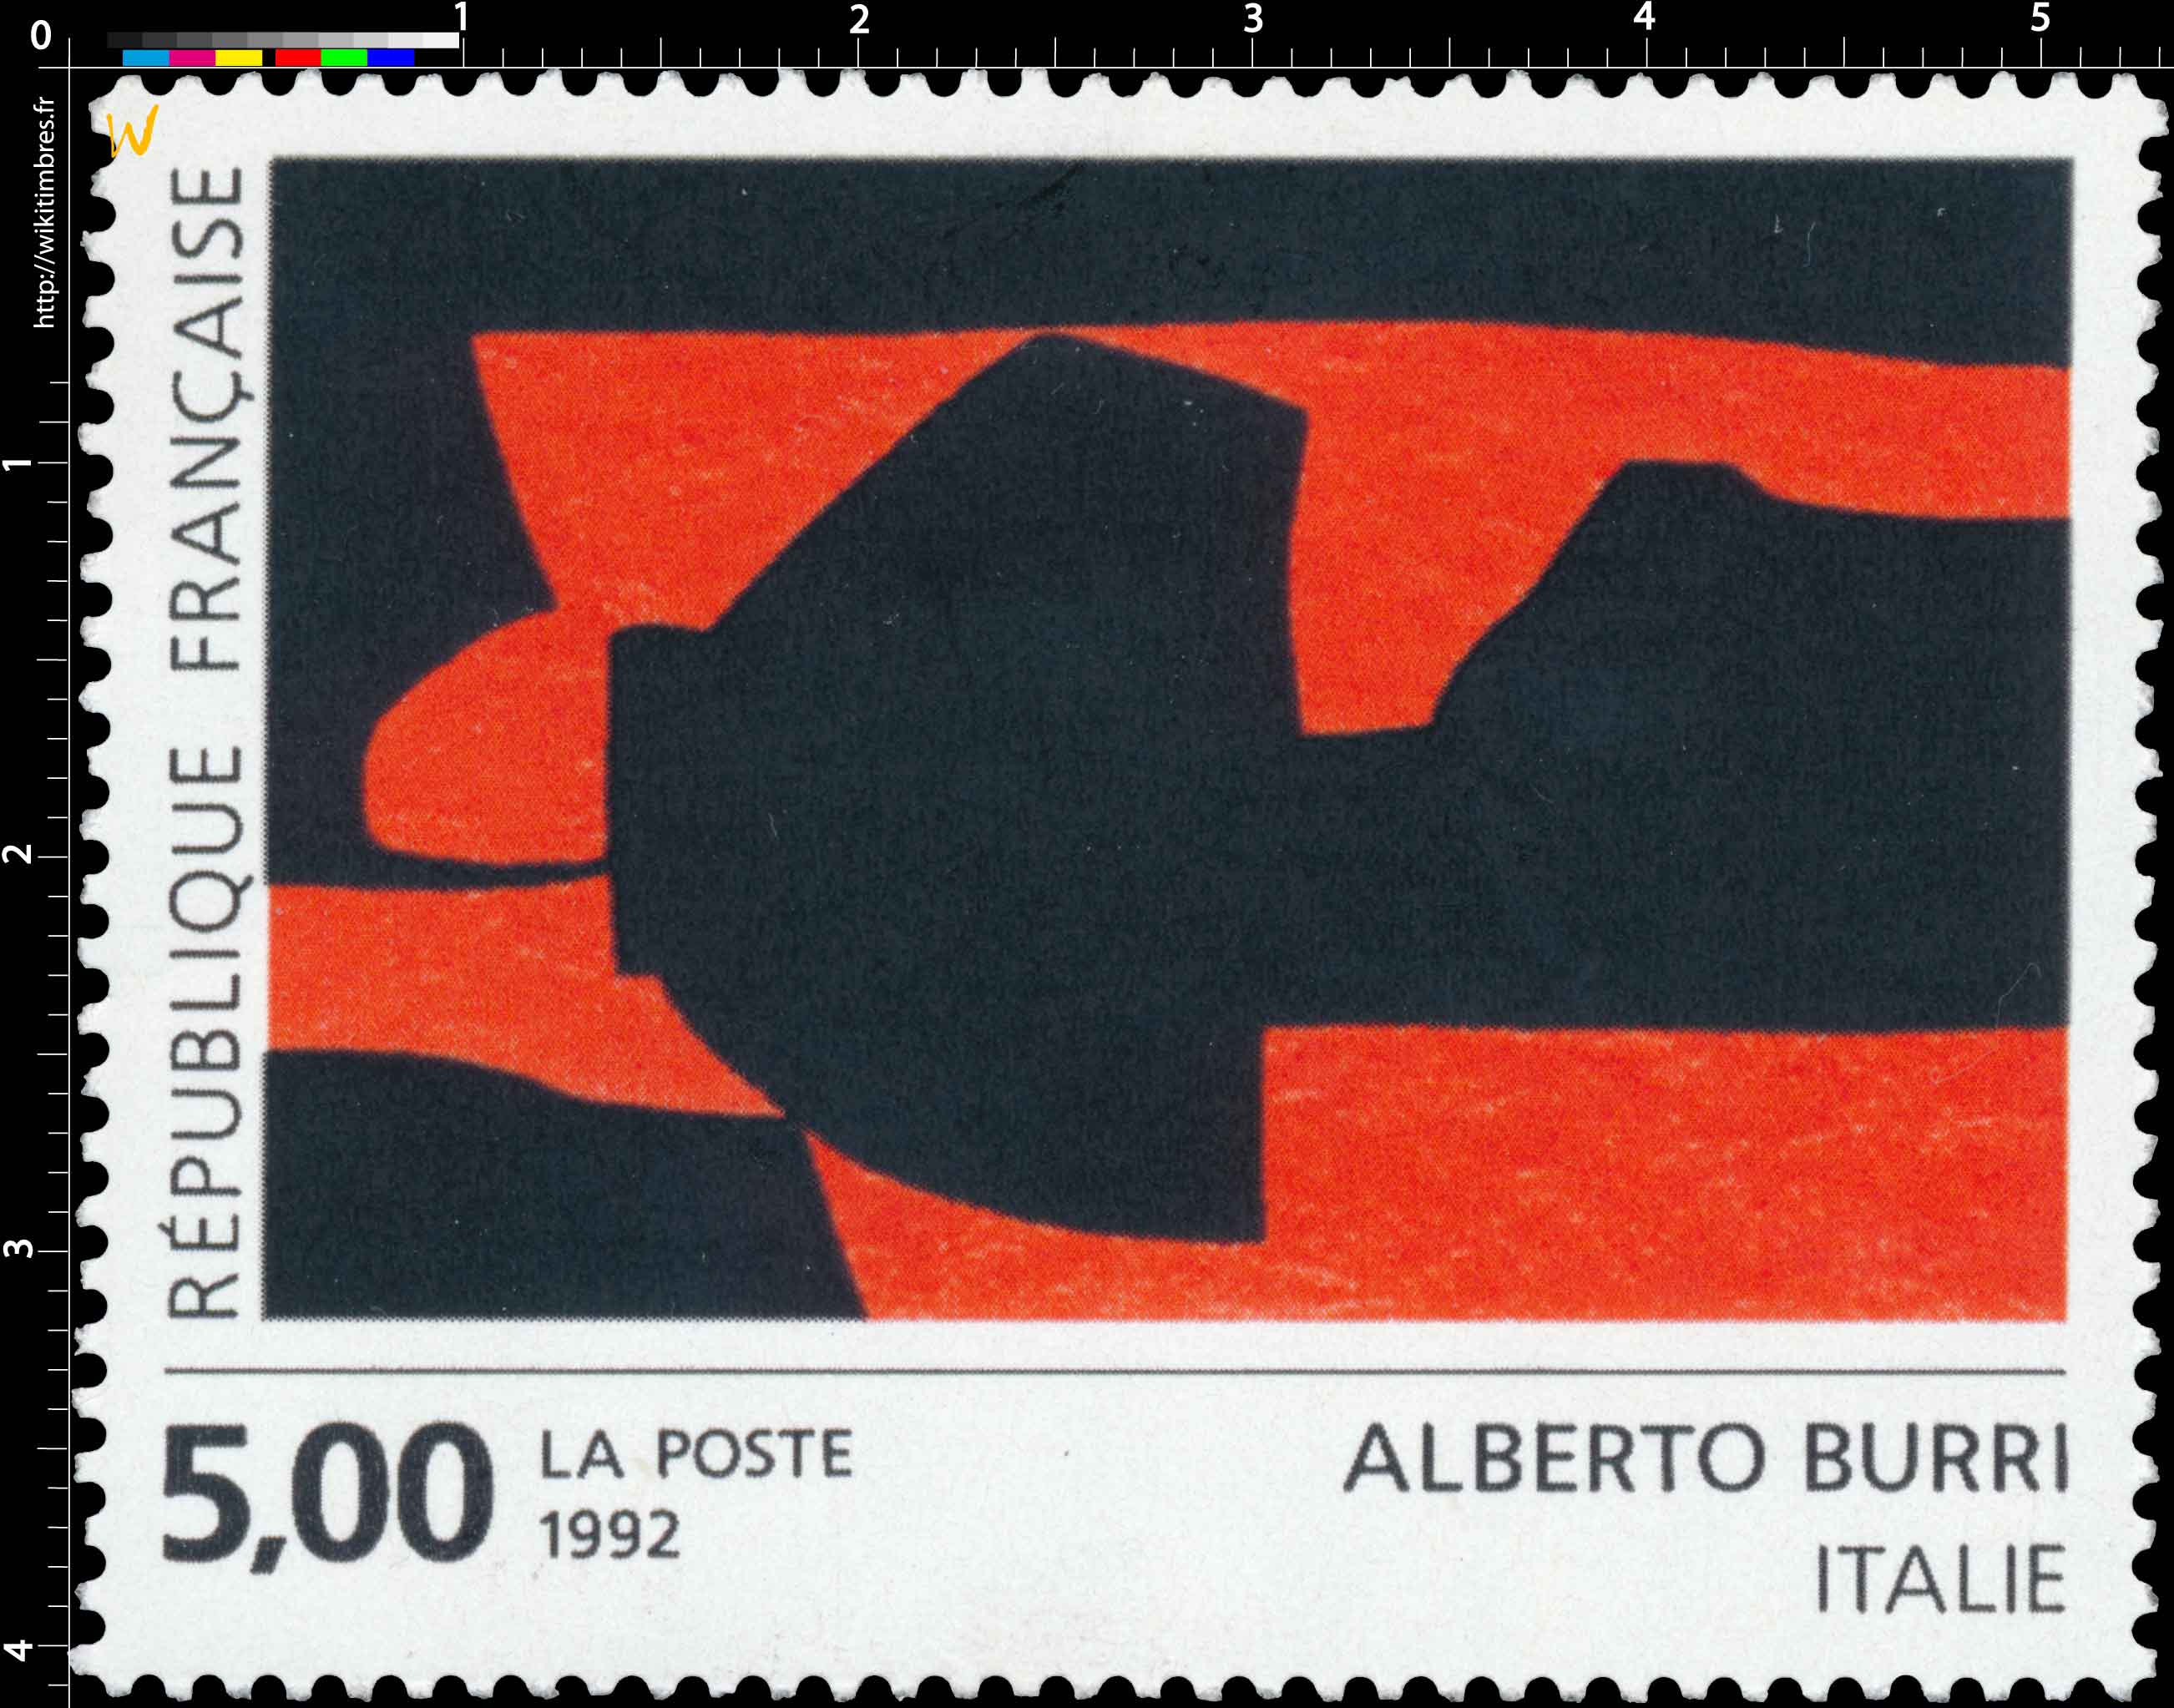 1992 ALBERTO BURRI ITALIE